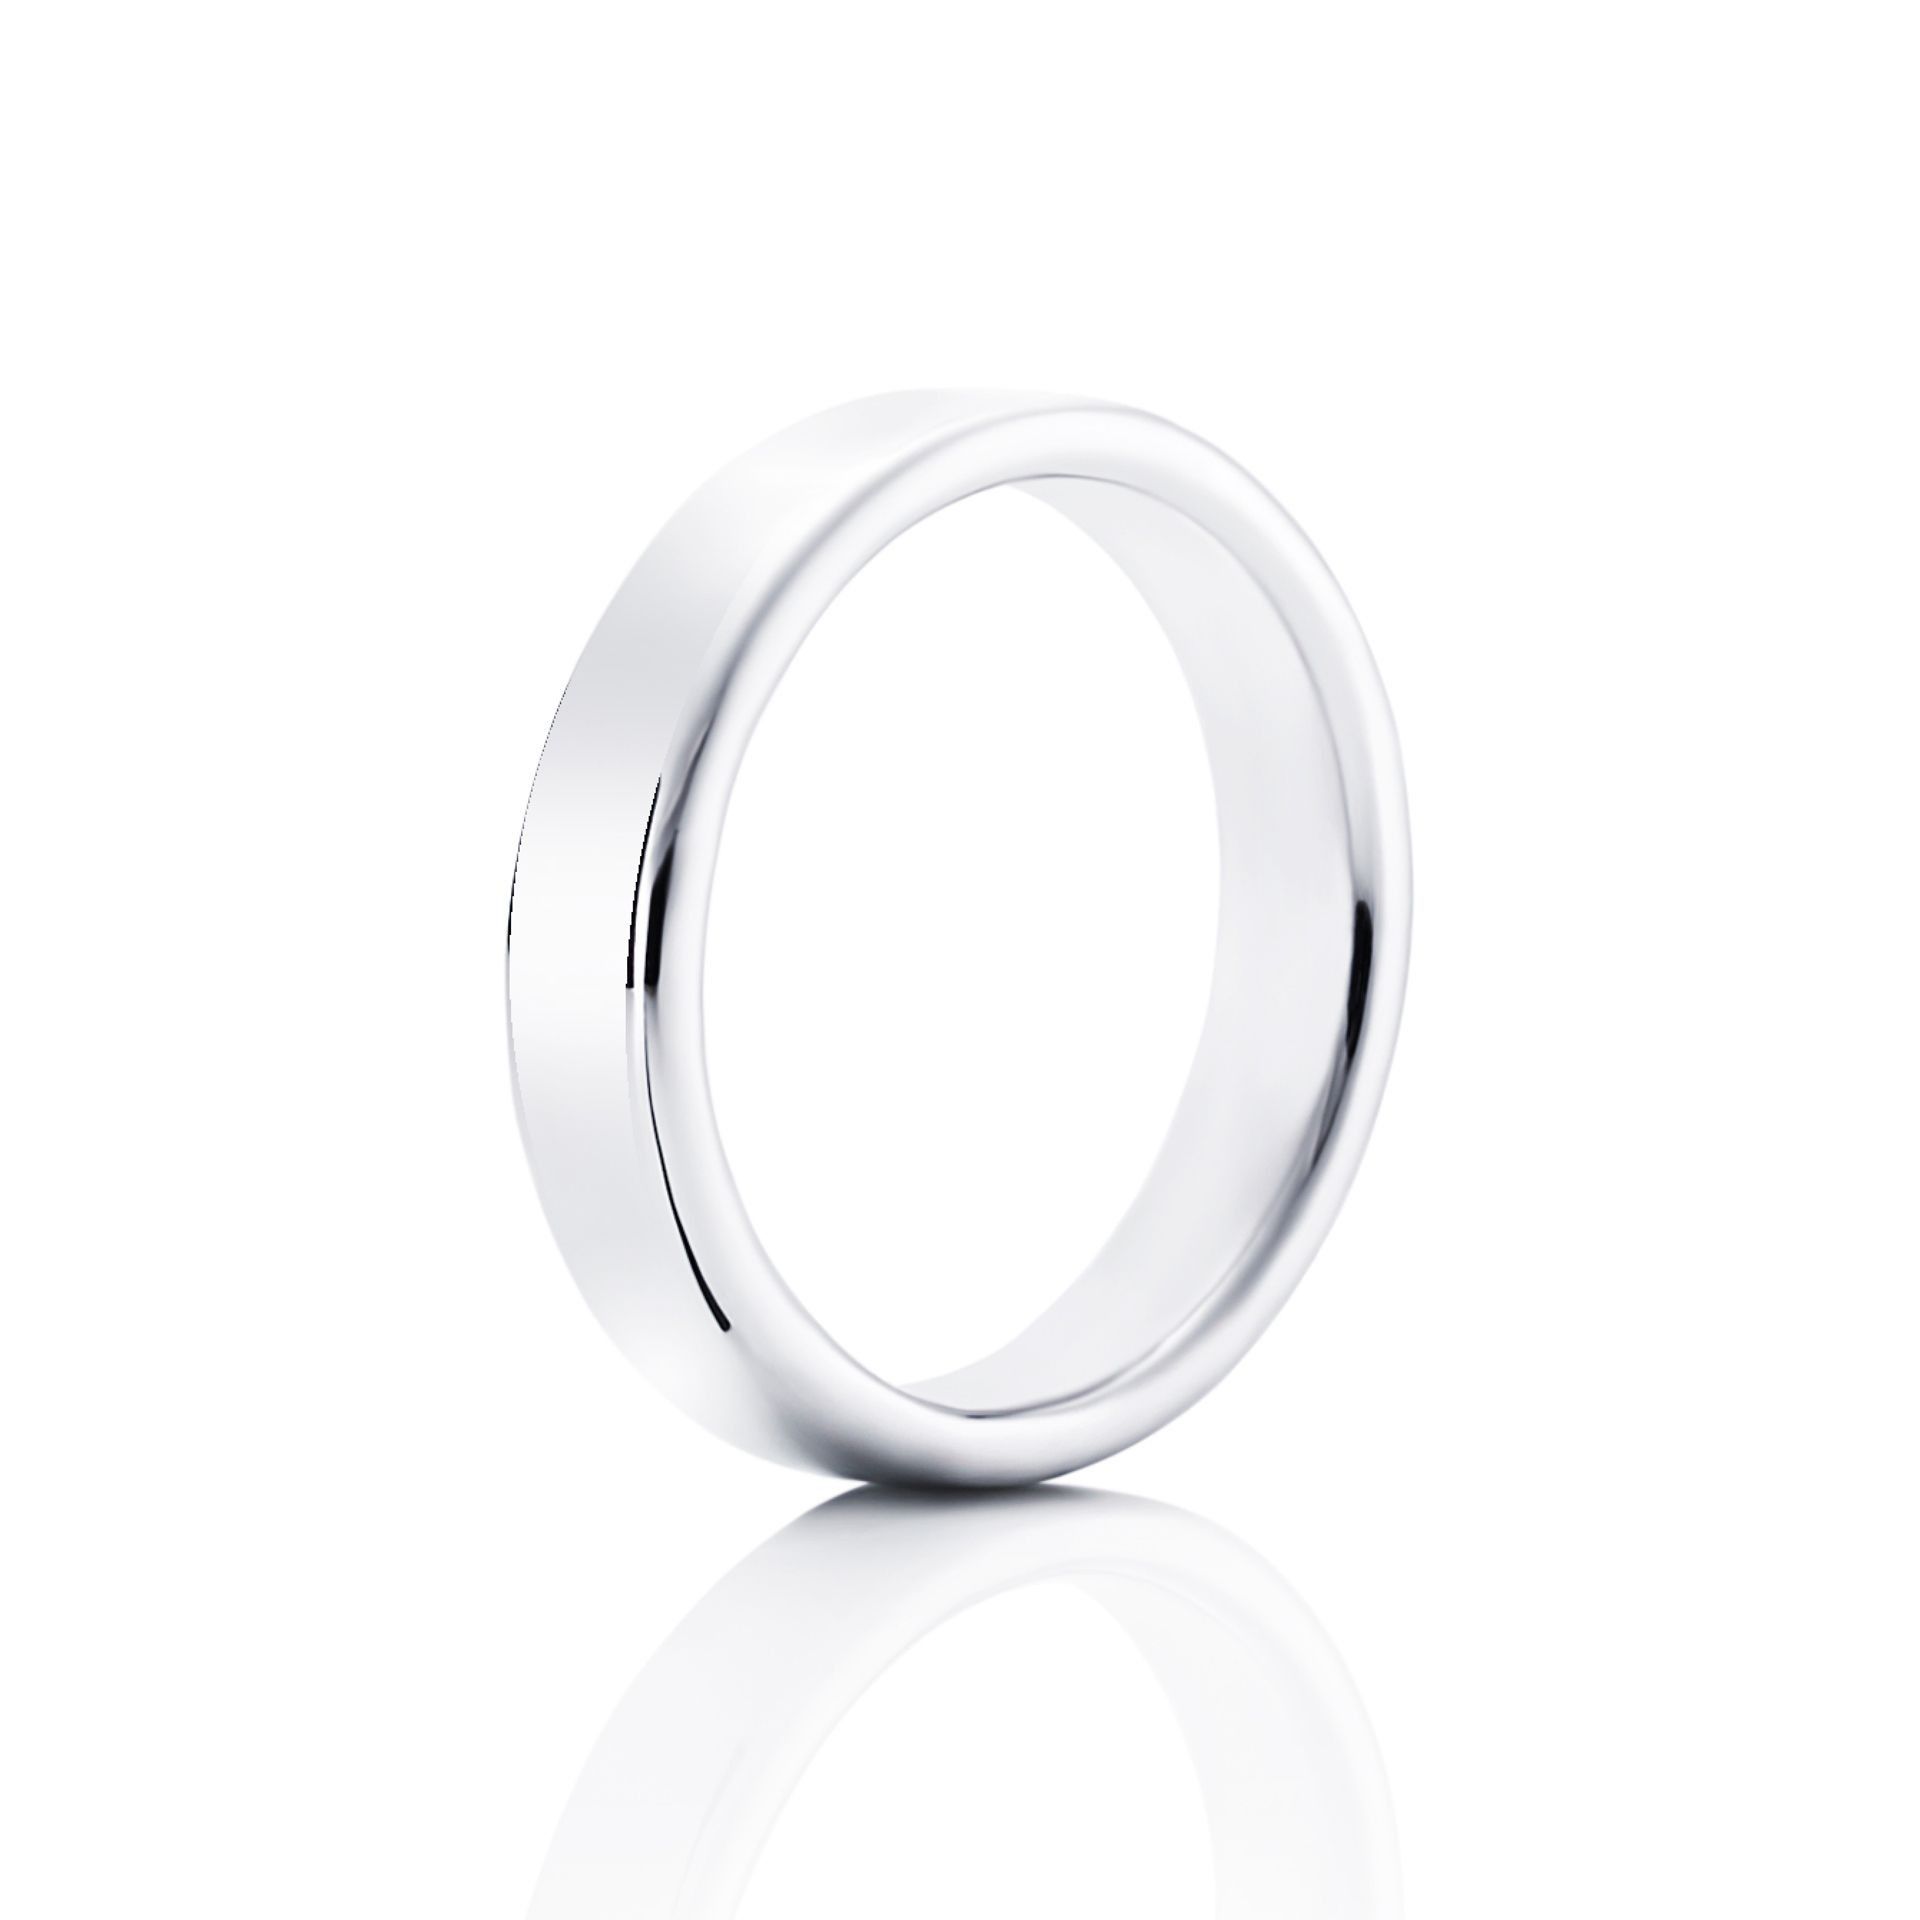 Läs mer om Efva Attling Soft Ring 15.75 MM - VITGULD